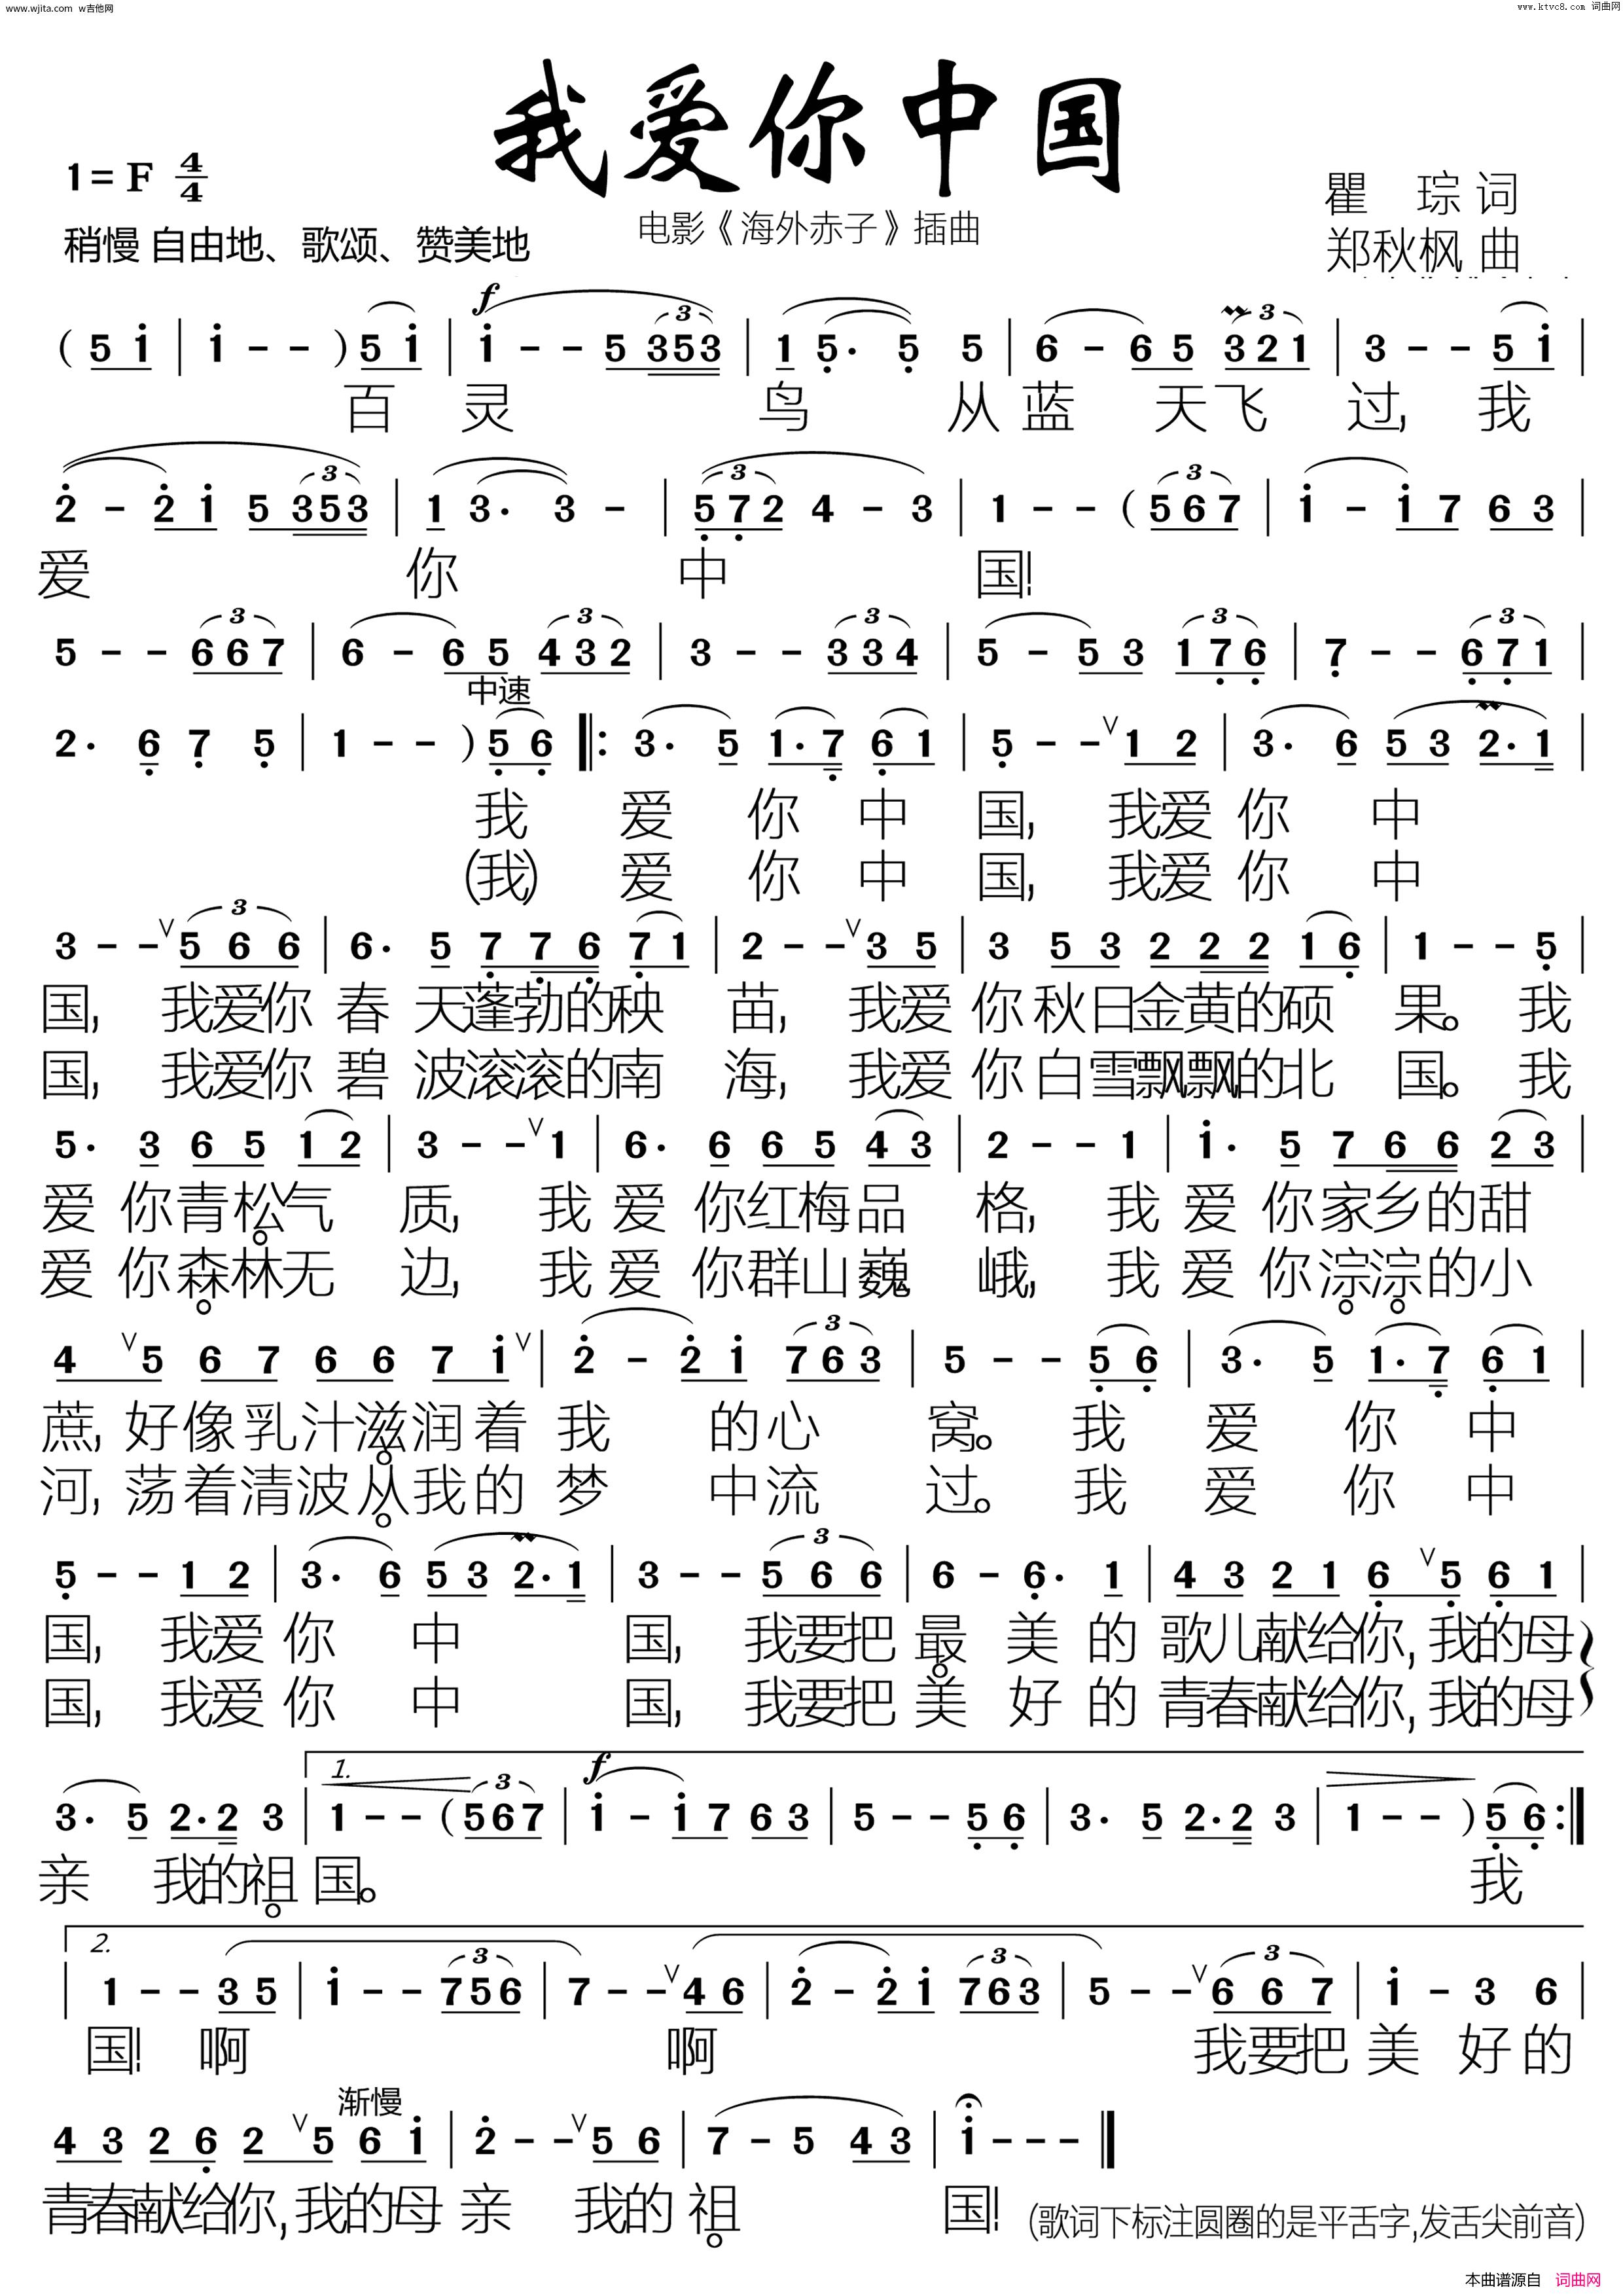 扫弦版【我爱你中国 A调六线谱吉他谱】_在线免费打印下载-爱弹琴乐谱网